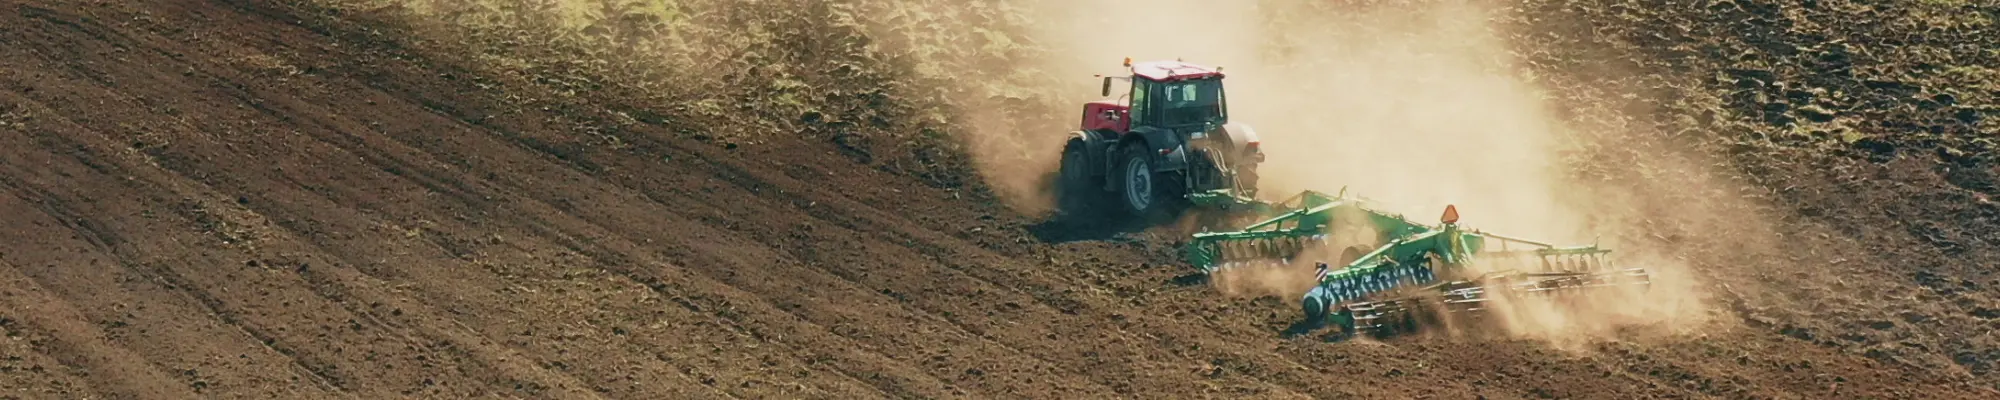 Tracteur en action dans les champs - Promotion de l agriculture éco-consciente avec le World Climate Farm Tool